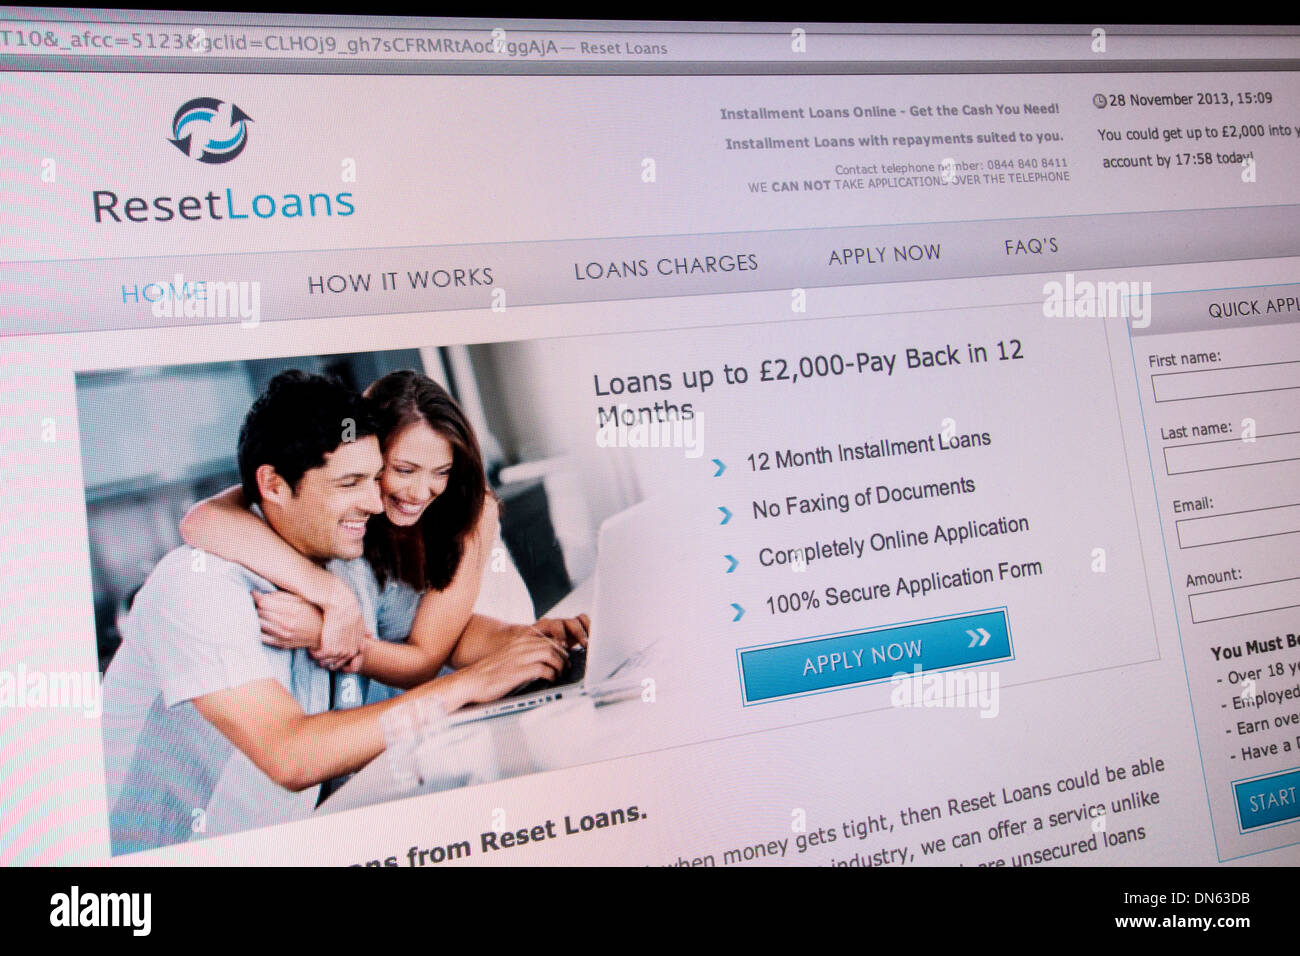 Screenshot del sito web ResetLoans. Essi sono payday loan company offre prestiti a breve termine ad alto interesse. Foto Stock